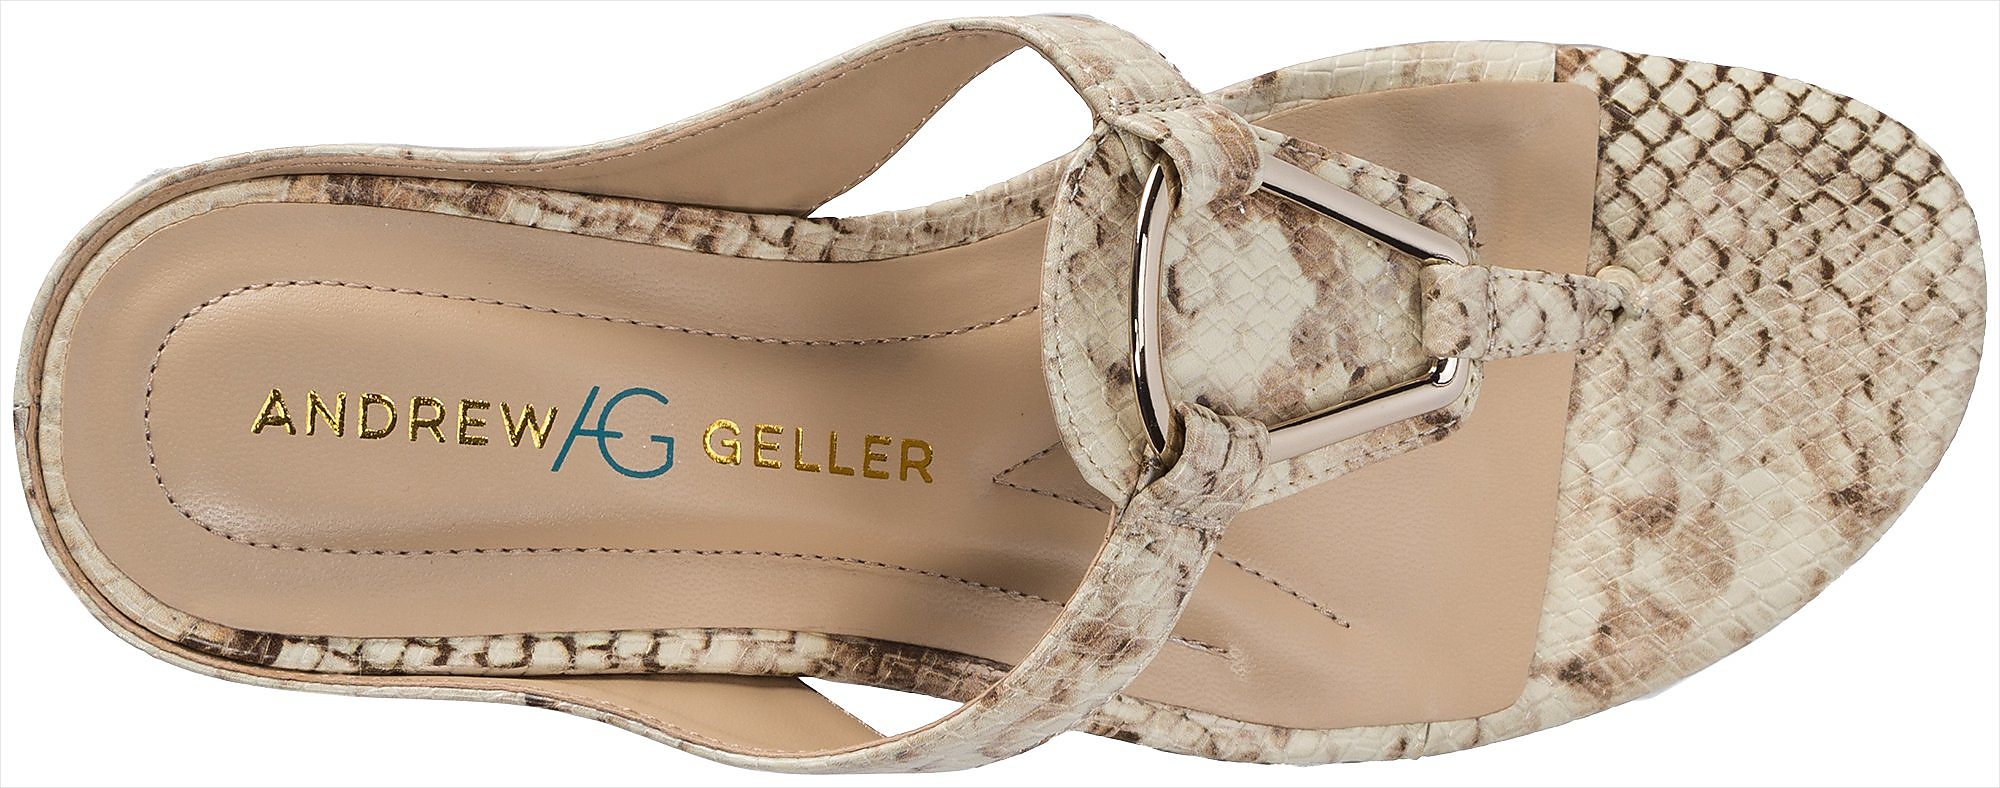 Andrew Geller Womens Insta Wedge Sandals eBay